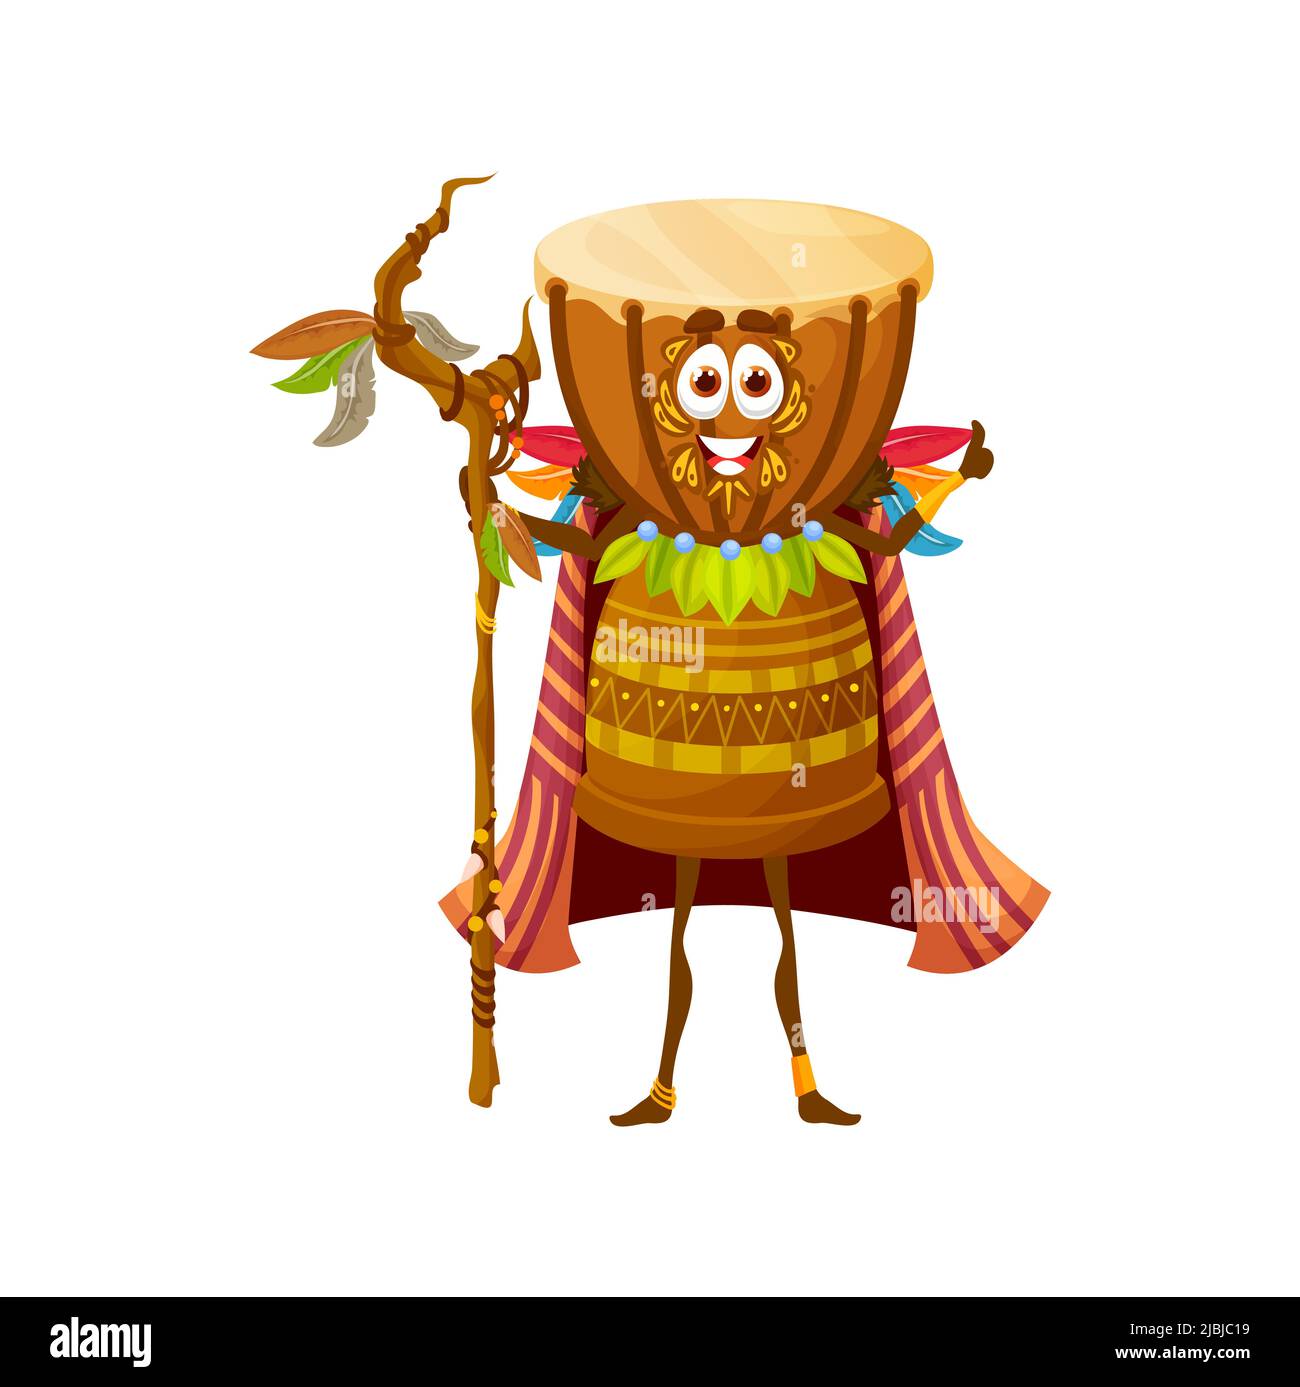 Cartoon african drum witch carattere, isolato vettore djembe voodoo shaman indossare mantello con piume che tiene il personale in legno. Divertente percussione tribale strumento, fiaba bongo drum personage musicale Illustrazione Vettoriale